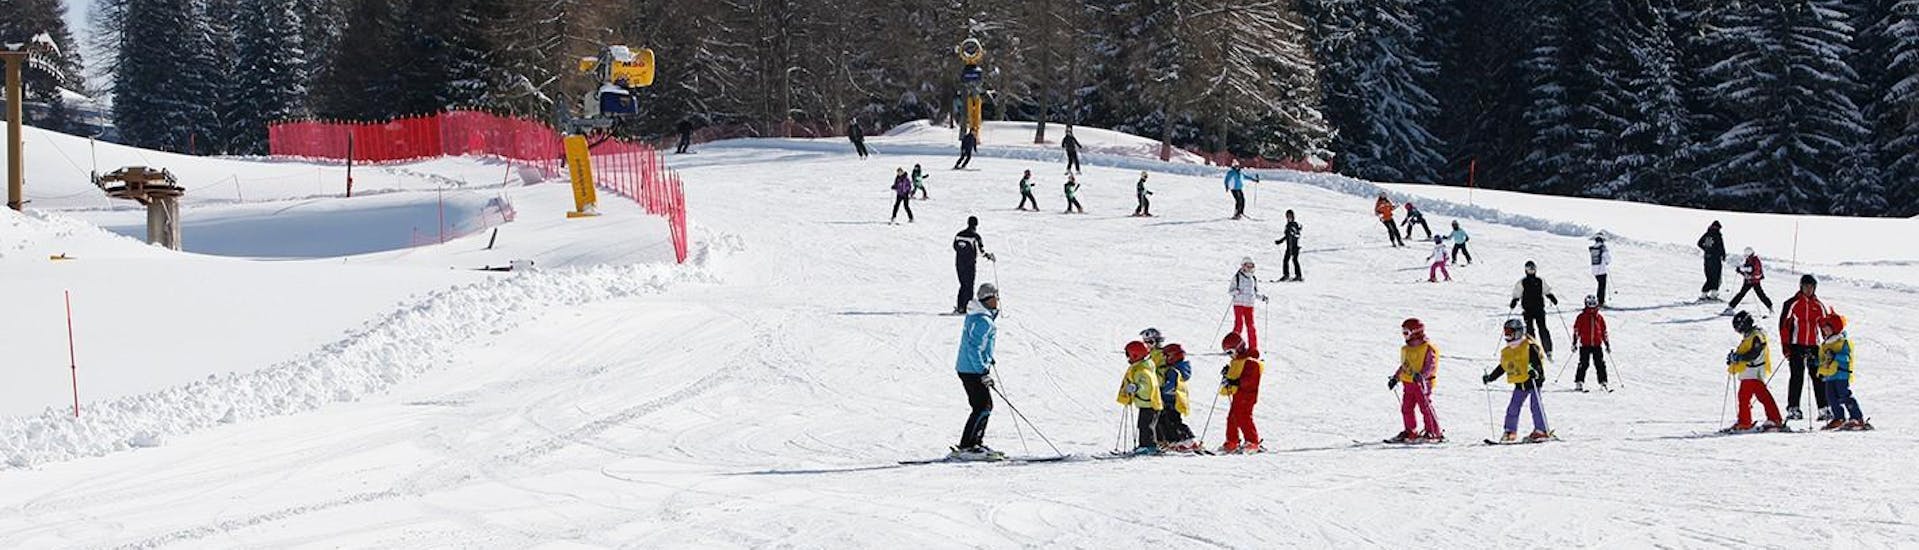 Un gruppo di bambini scia in pista durante una lezione di sci a Folgaria con la Scuola Italiana Sci Folgaria - Fondo Grande.